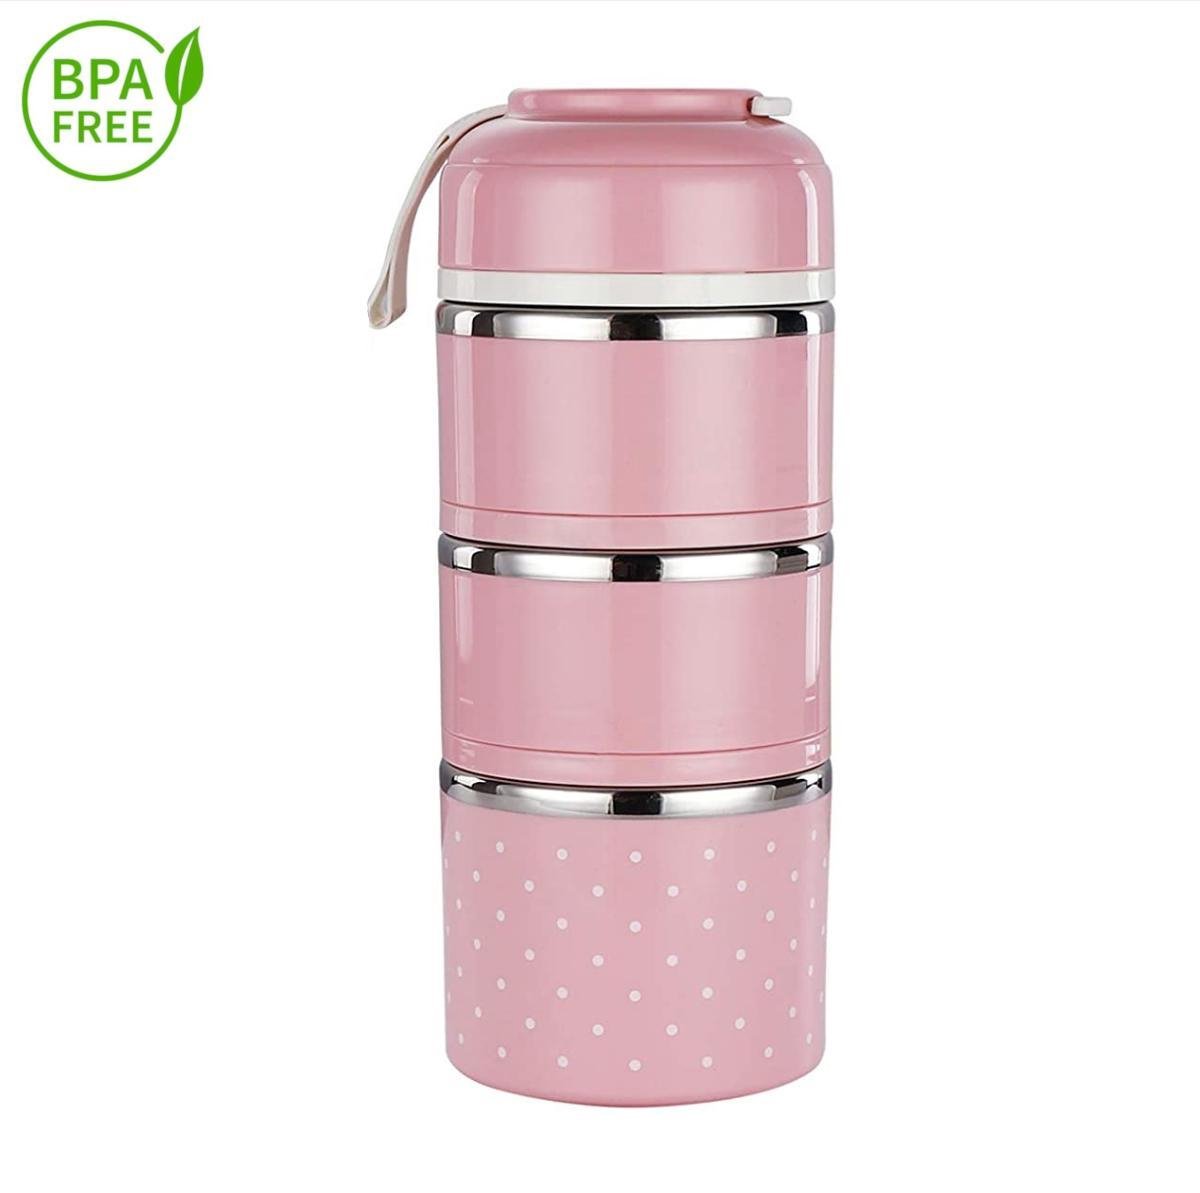 Evolize Bento Lunchbox in Japanse Stijl - Bento Lunch Box - 6 Compartimenten - Lekvrij - BPA-vrij - Milieuvriendelijk RVS - 1650ml - Roze